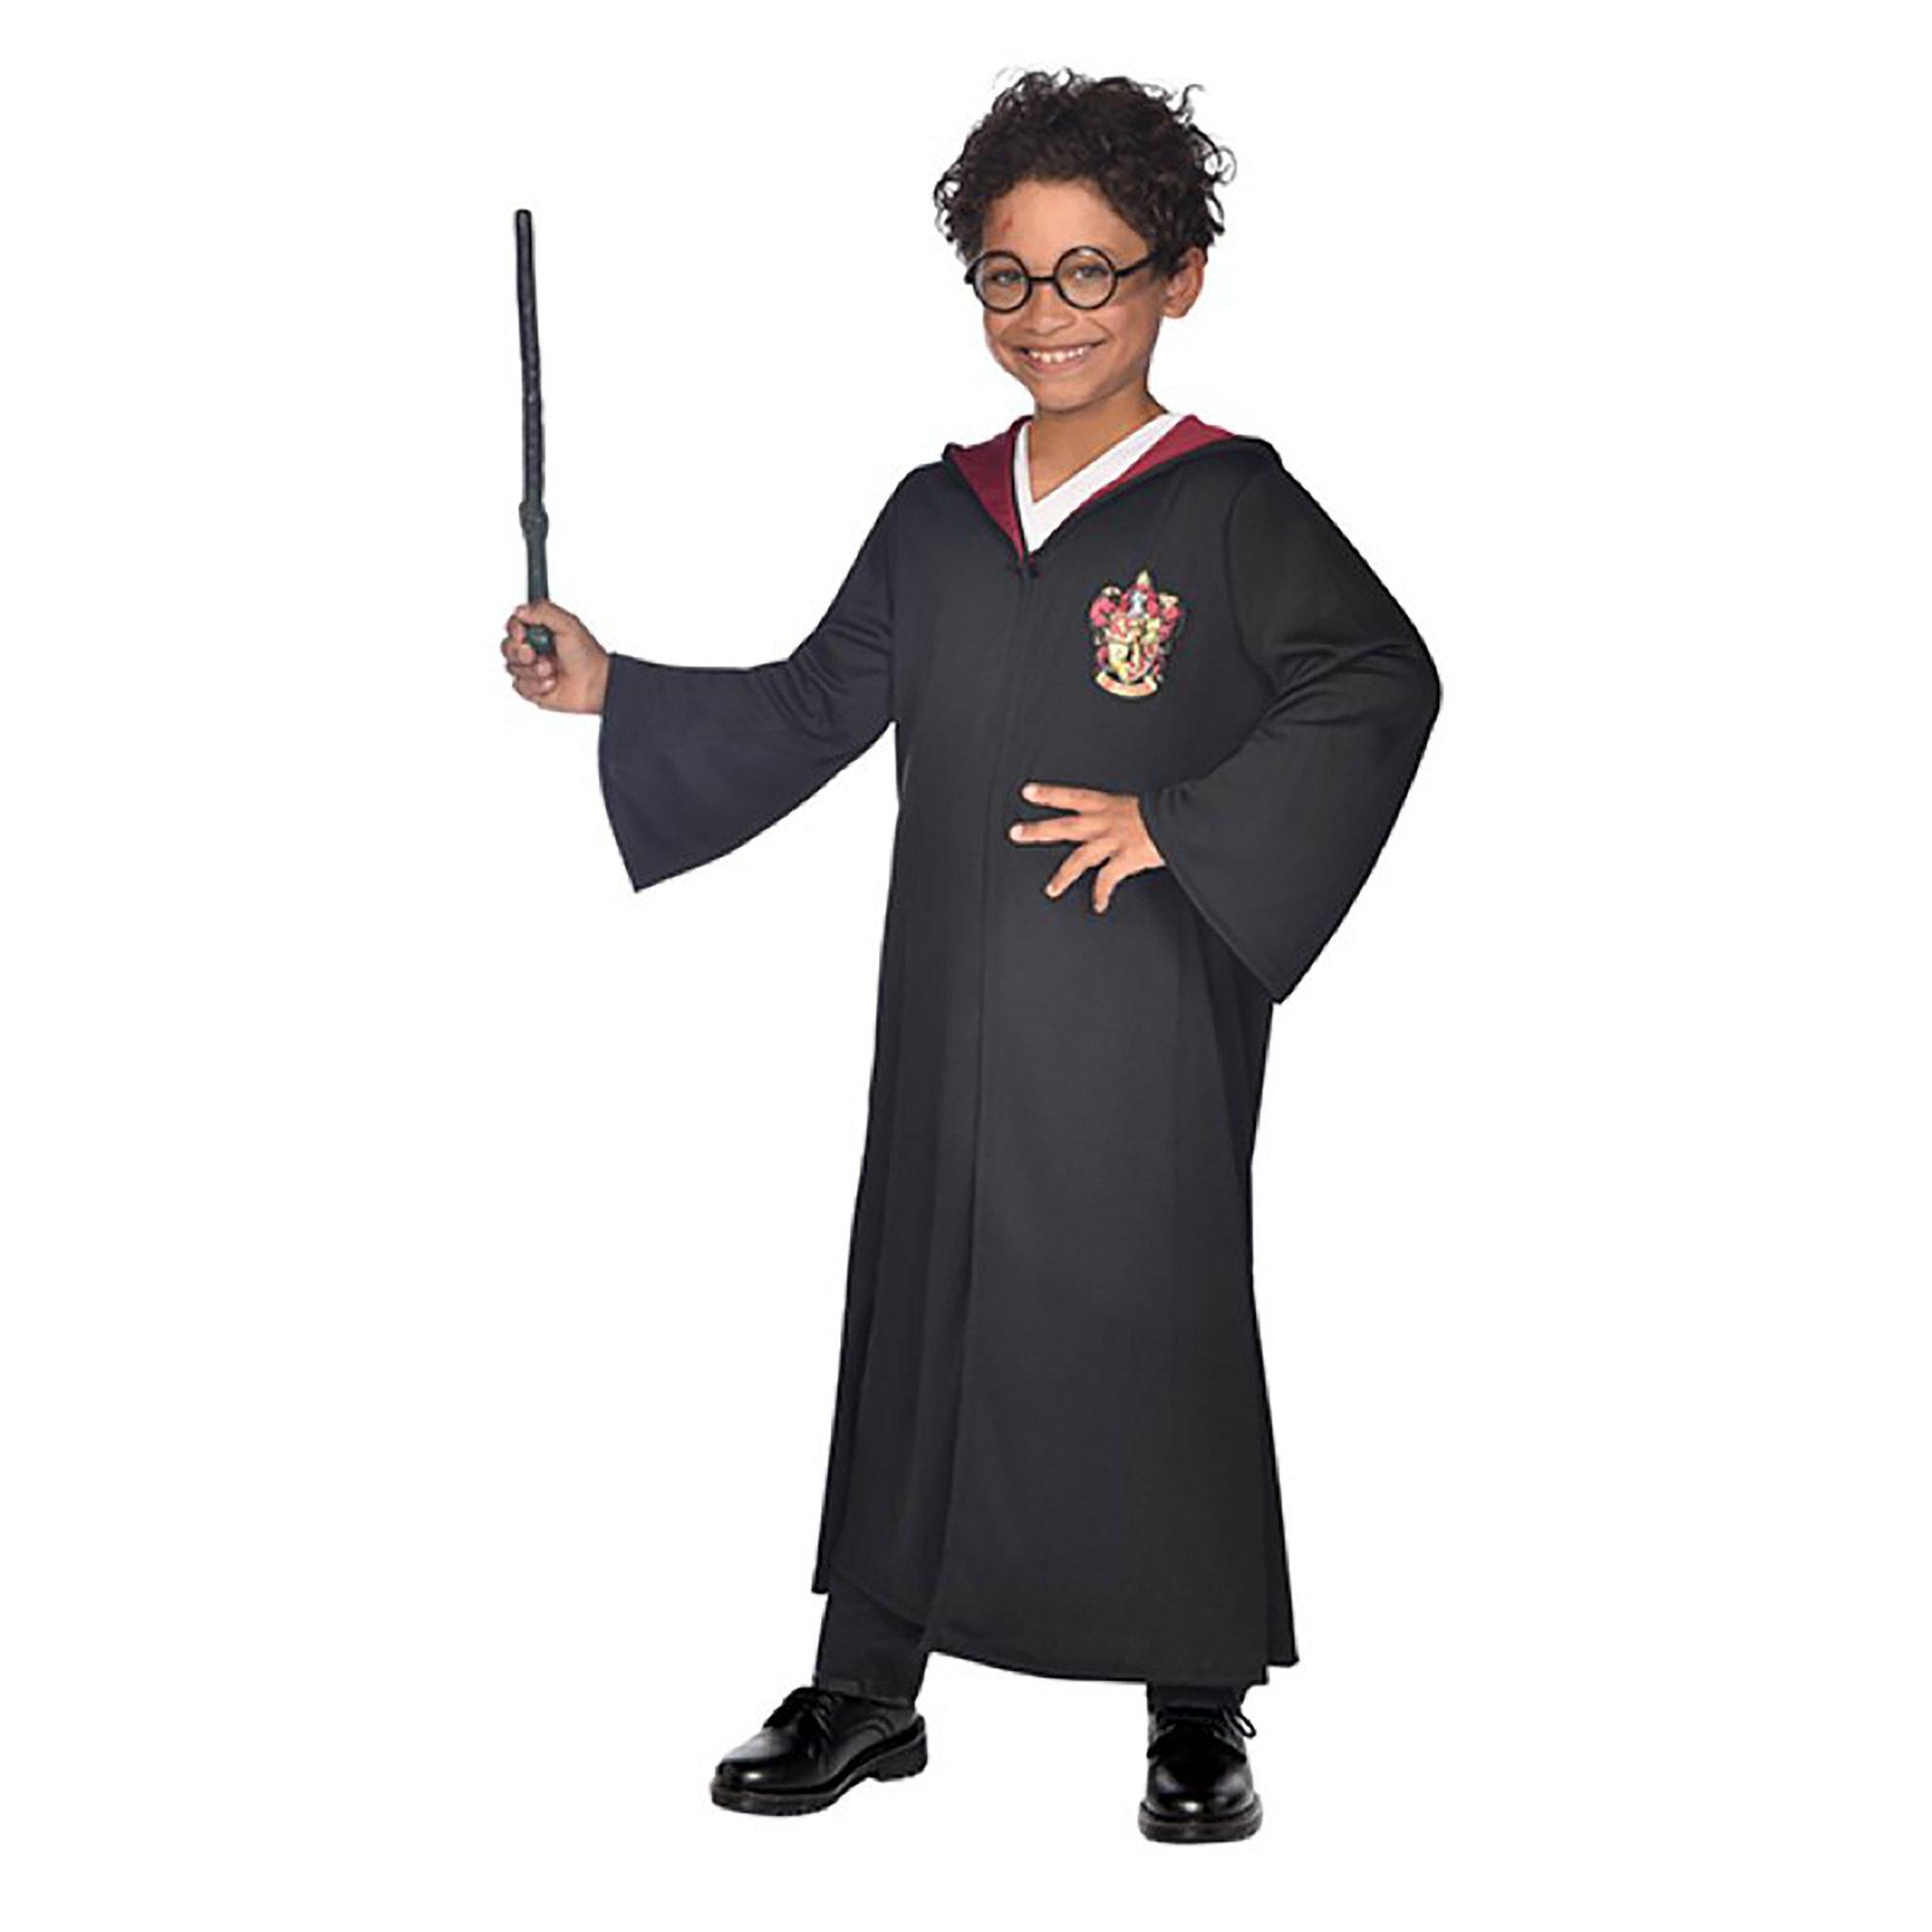 Baguette magique et lunettes d'Harry Potter 